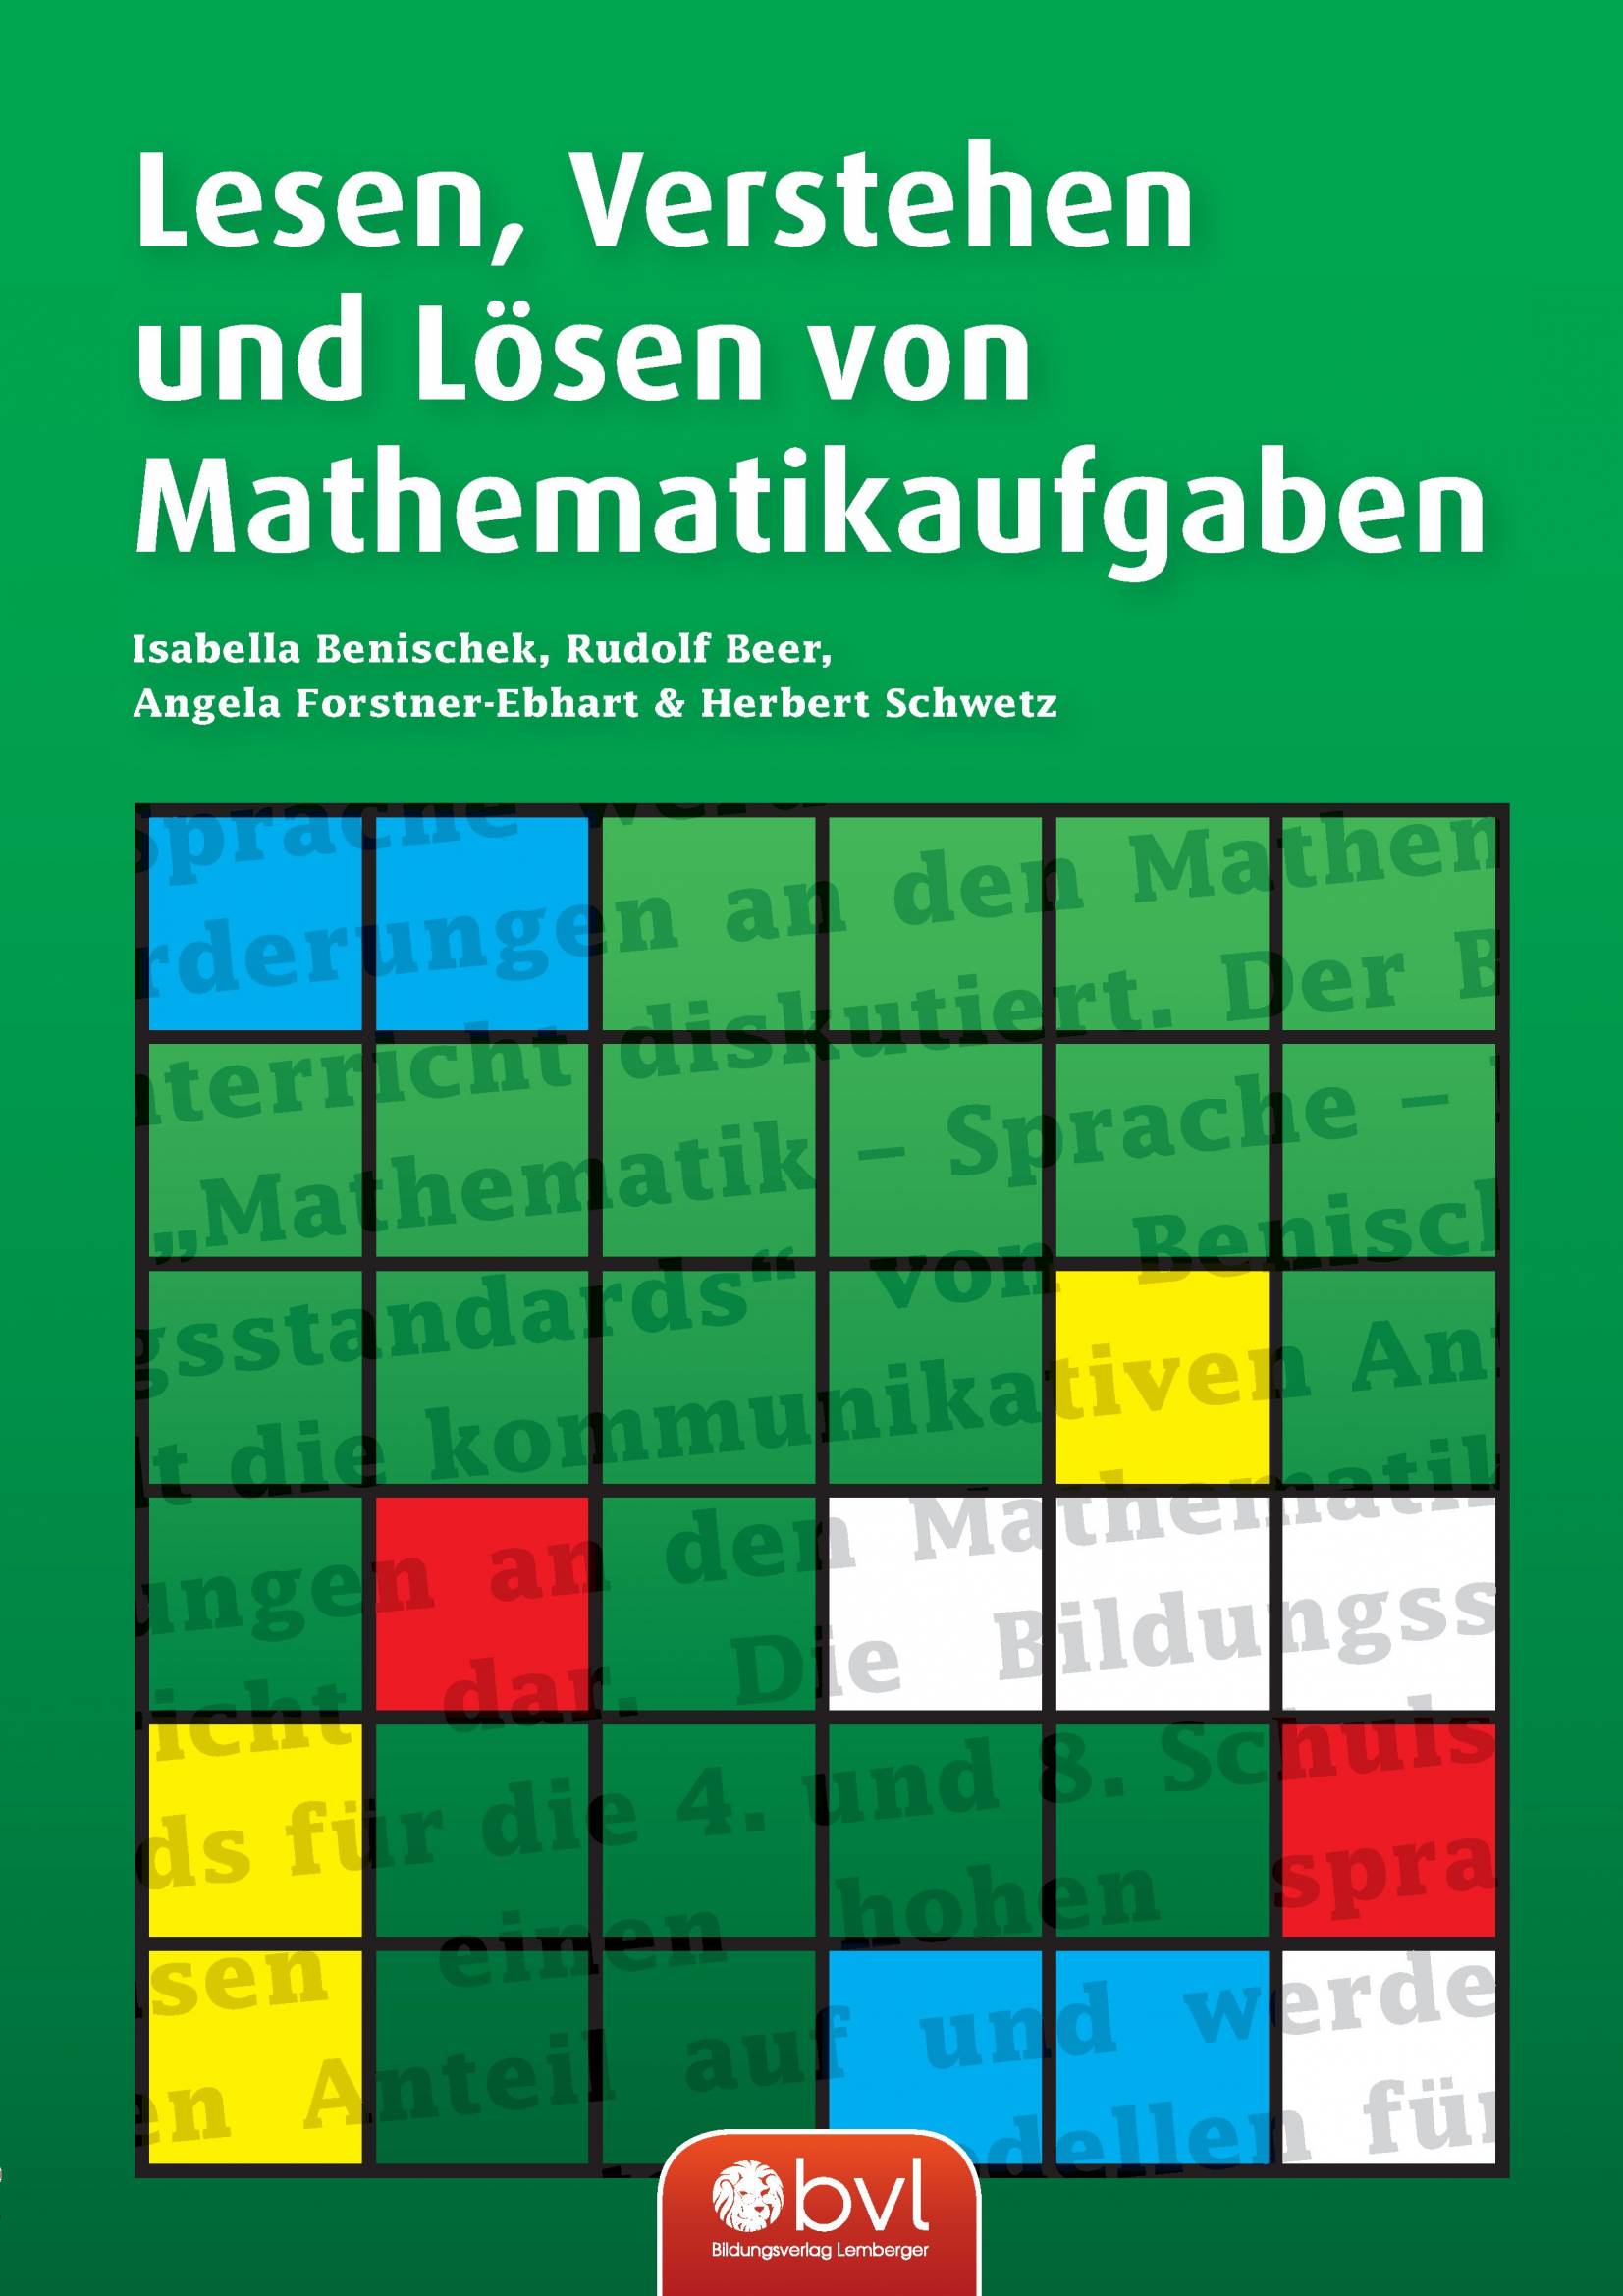 Lesen Verstehen und Loesen von Mathematikaufgaben :: Digi.Schule